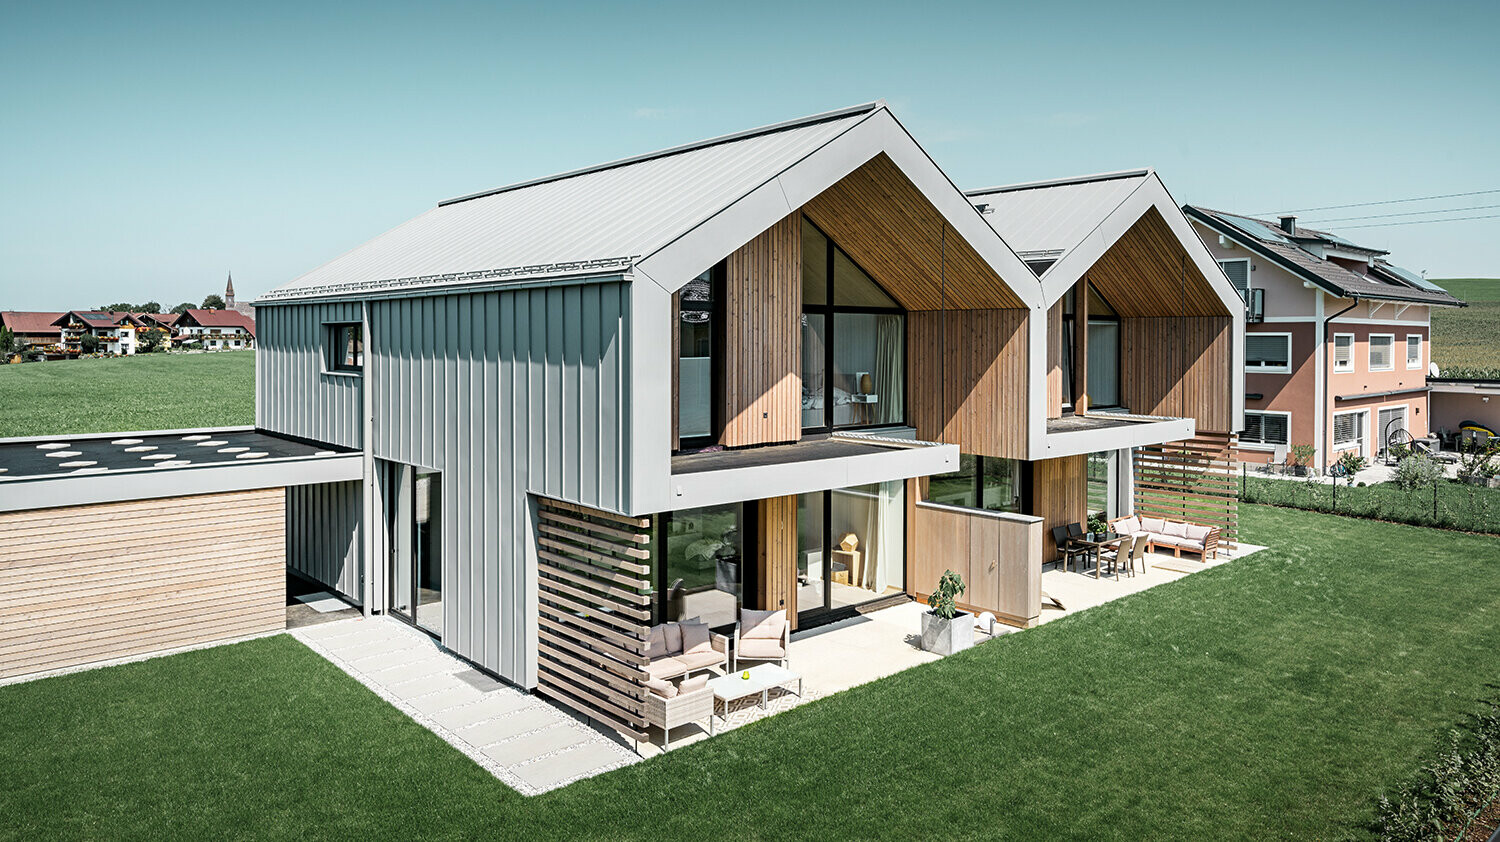 moderne dobbelthuse med PREFALZ-klimaskærm, -tag og -facade er beklædt med PREFALZ i patinagrå inklusiv kvadratrør